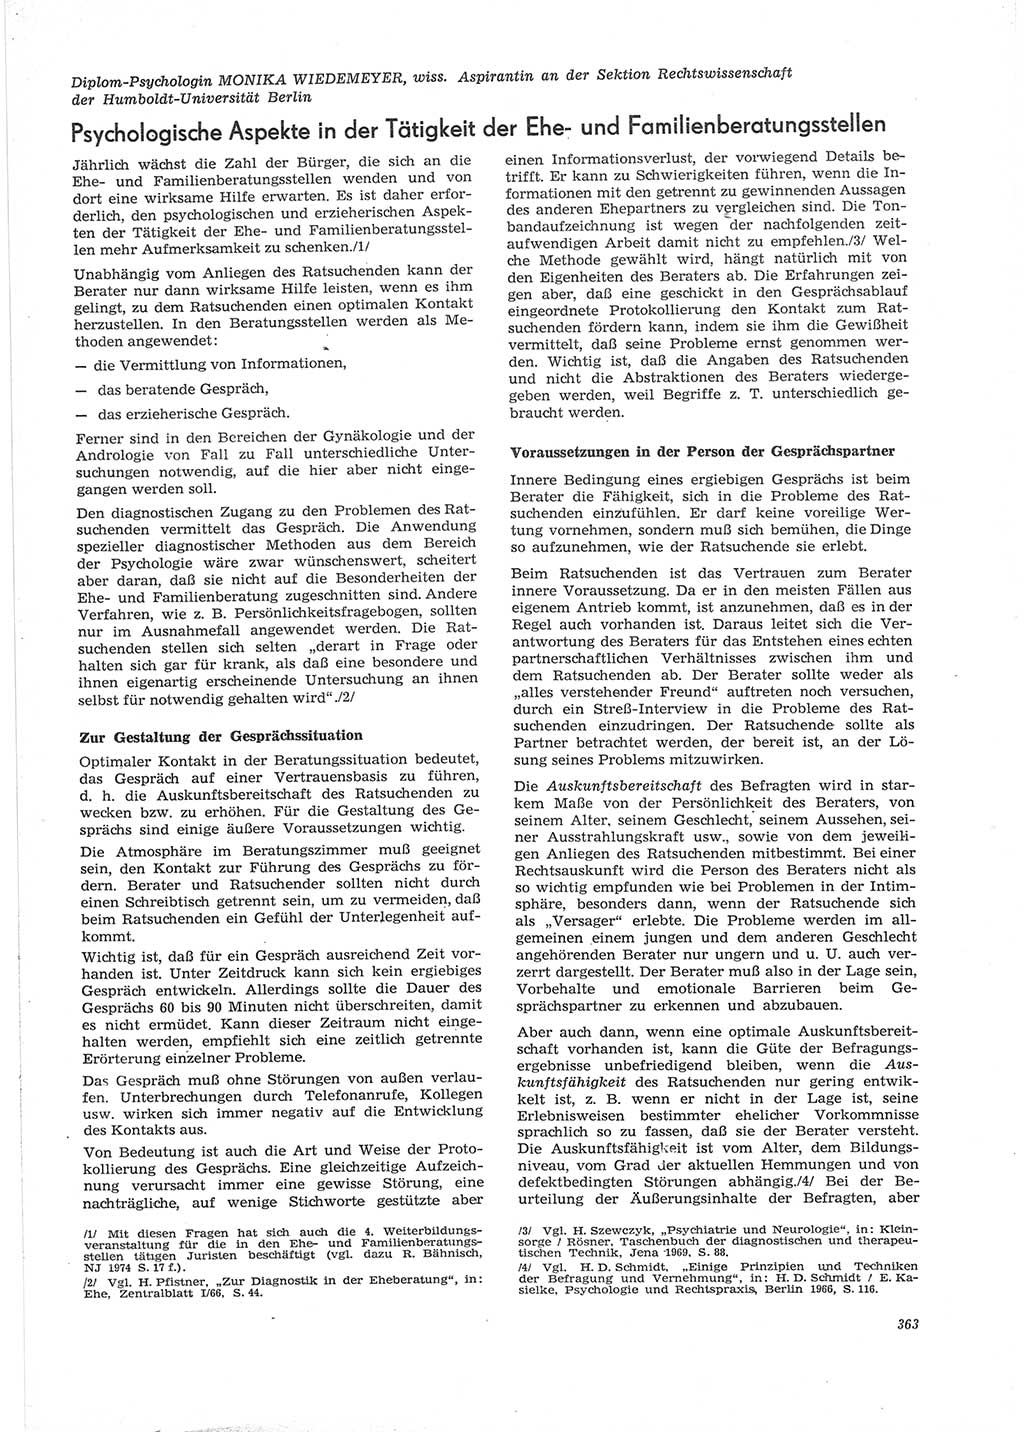 Neue Justiz (NJ), Zeitschrift für Recht und Rechtswissenschaft [Deutsche Demokratische Republik (DDR)], 28. Jahrgang 1974, Seite 363 (NJ DDR 1974, S. 363)